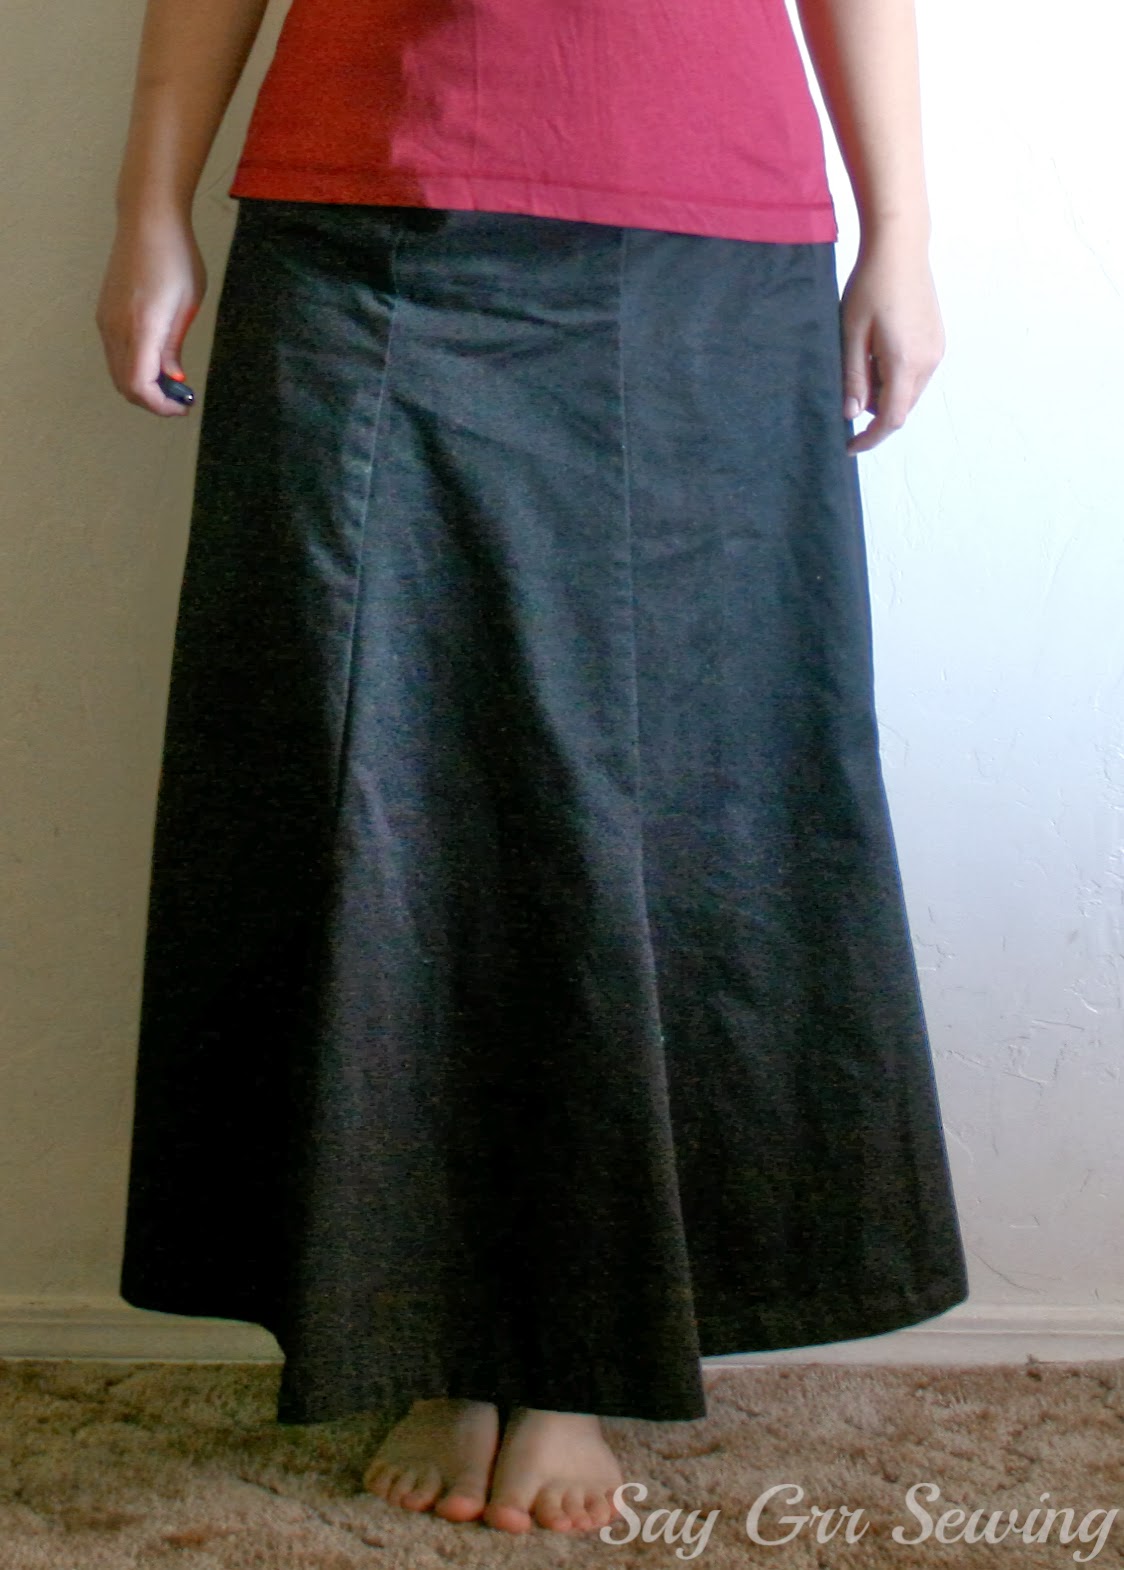 Say Grr Sewing: The Long-Awaited Black Skirt